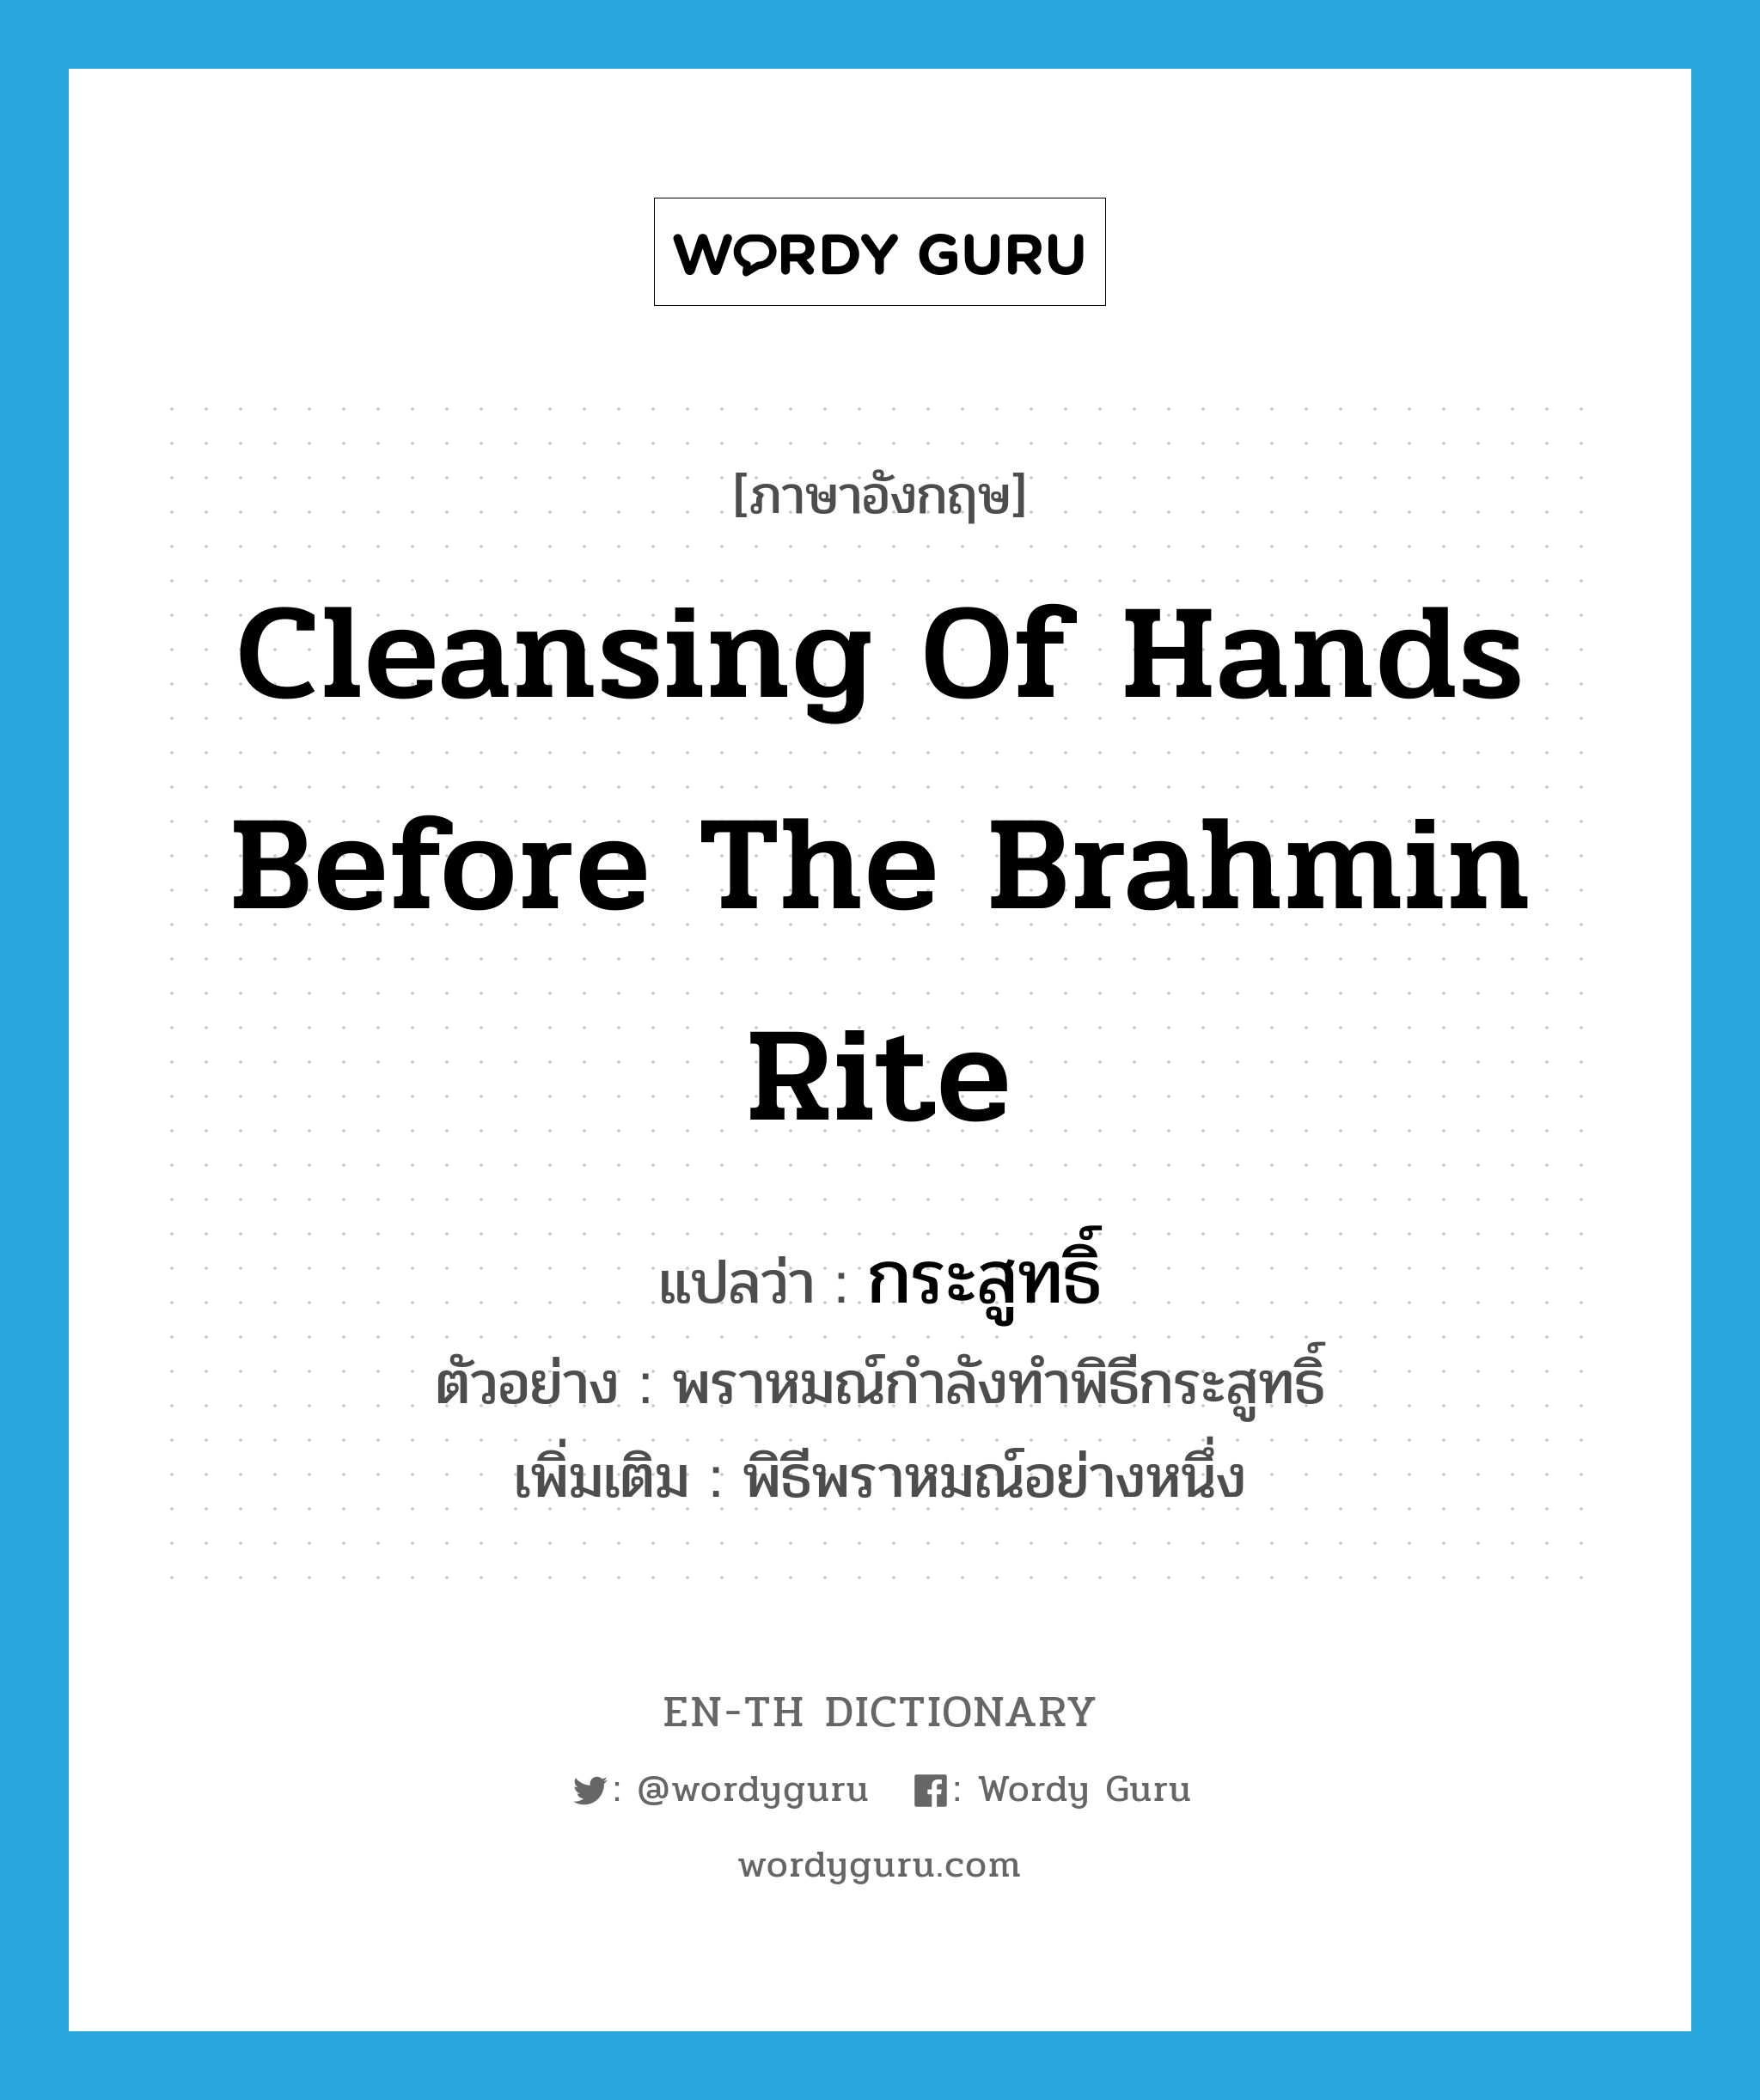 cleansing of hands before the Brahmin rite แปลว่า?, คำศัพท์ภาษาอังกฤษ cleansing of hands before the Brahmin rite แปลว่า กระสูทธิ์ ประเภท N ตัวอย่าง พราหมณ์กำลังทำพิธีกระสูทธิ์ เพิ่มเติม พิธีพราหมณ์อย่างหนึ่ง หมวด N